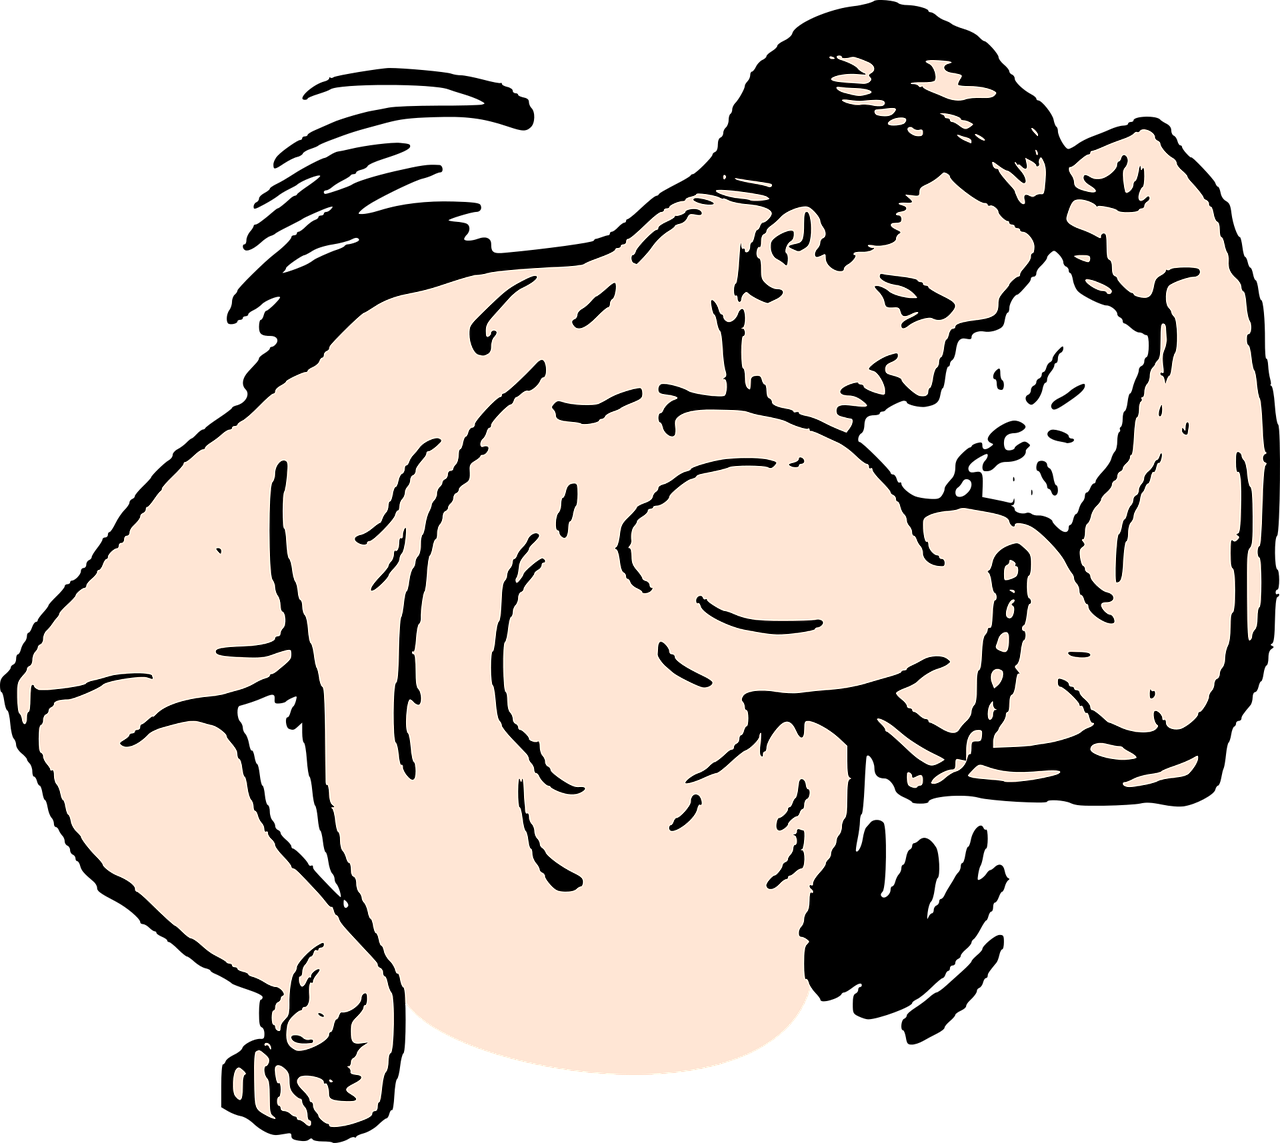 Definiendo el bíceps: ¿Qué es y cómo trabajarlo?